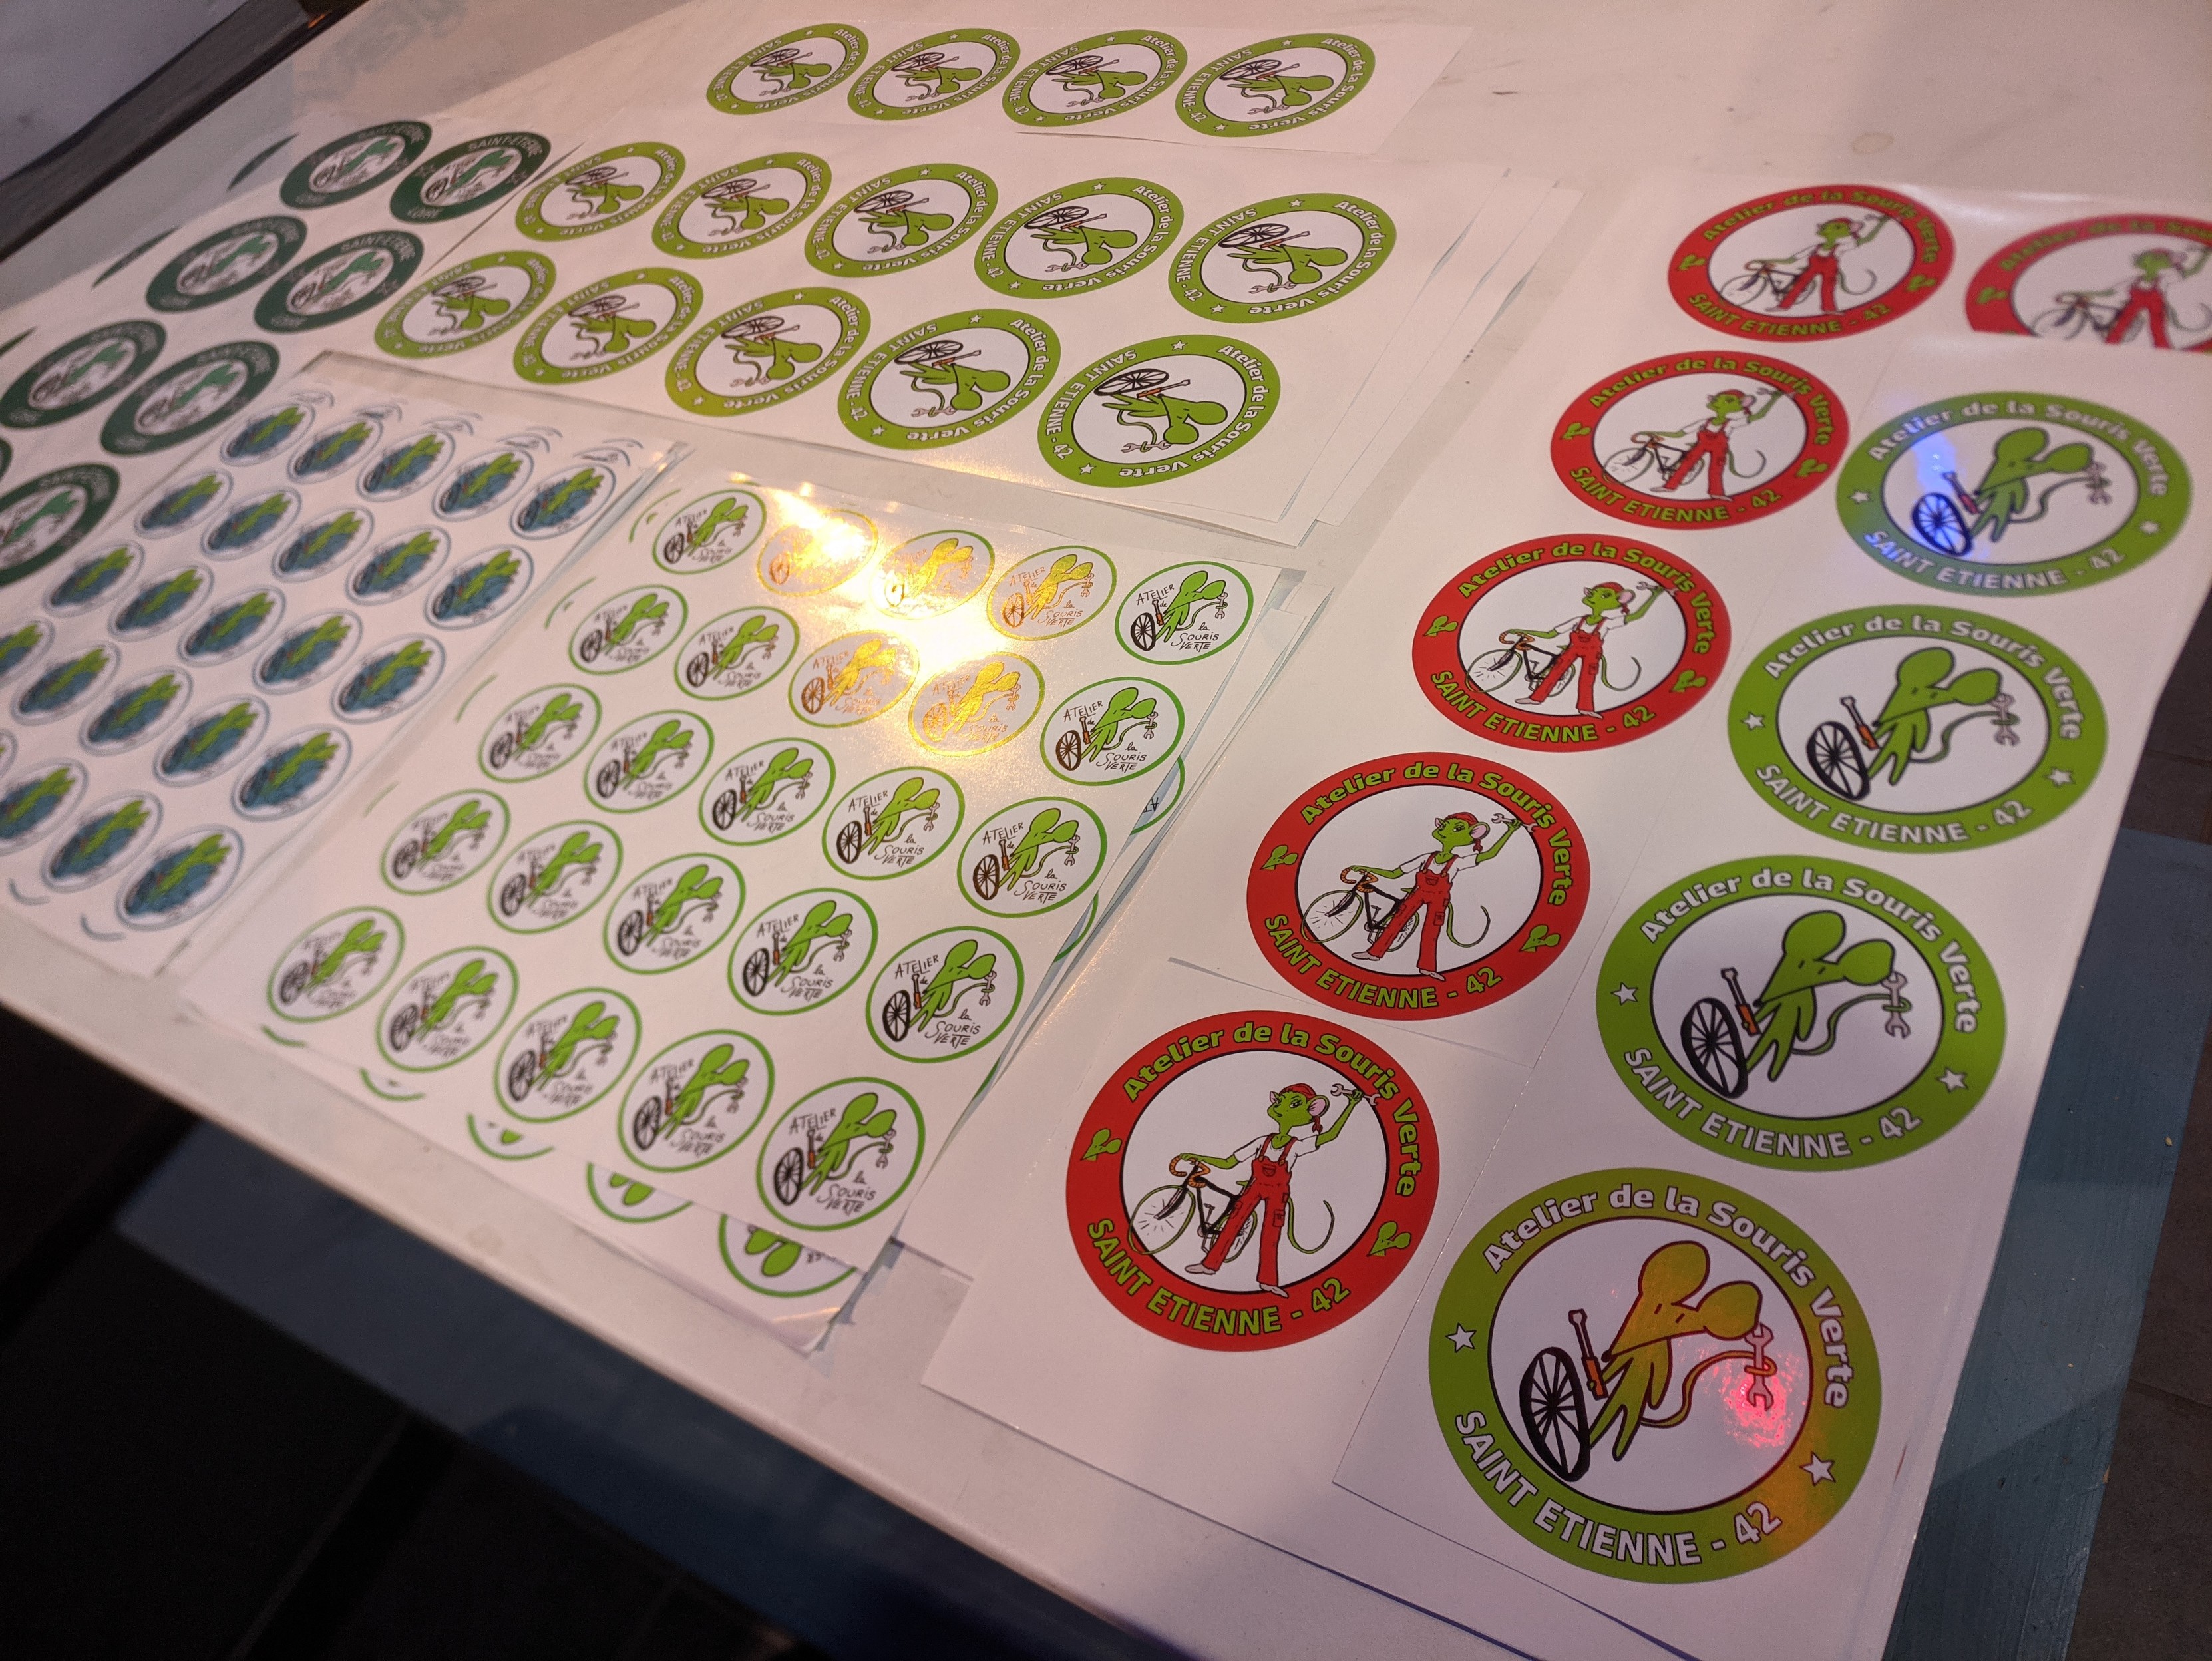 Planches de stickers de l'atelier de la souris verte.